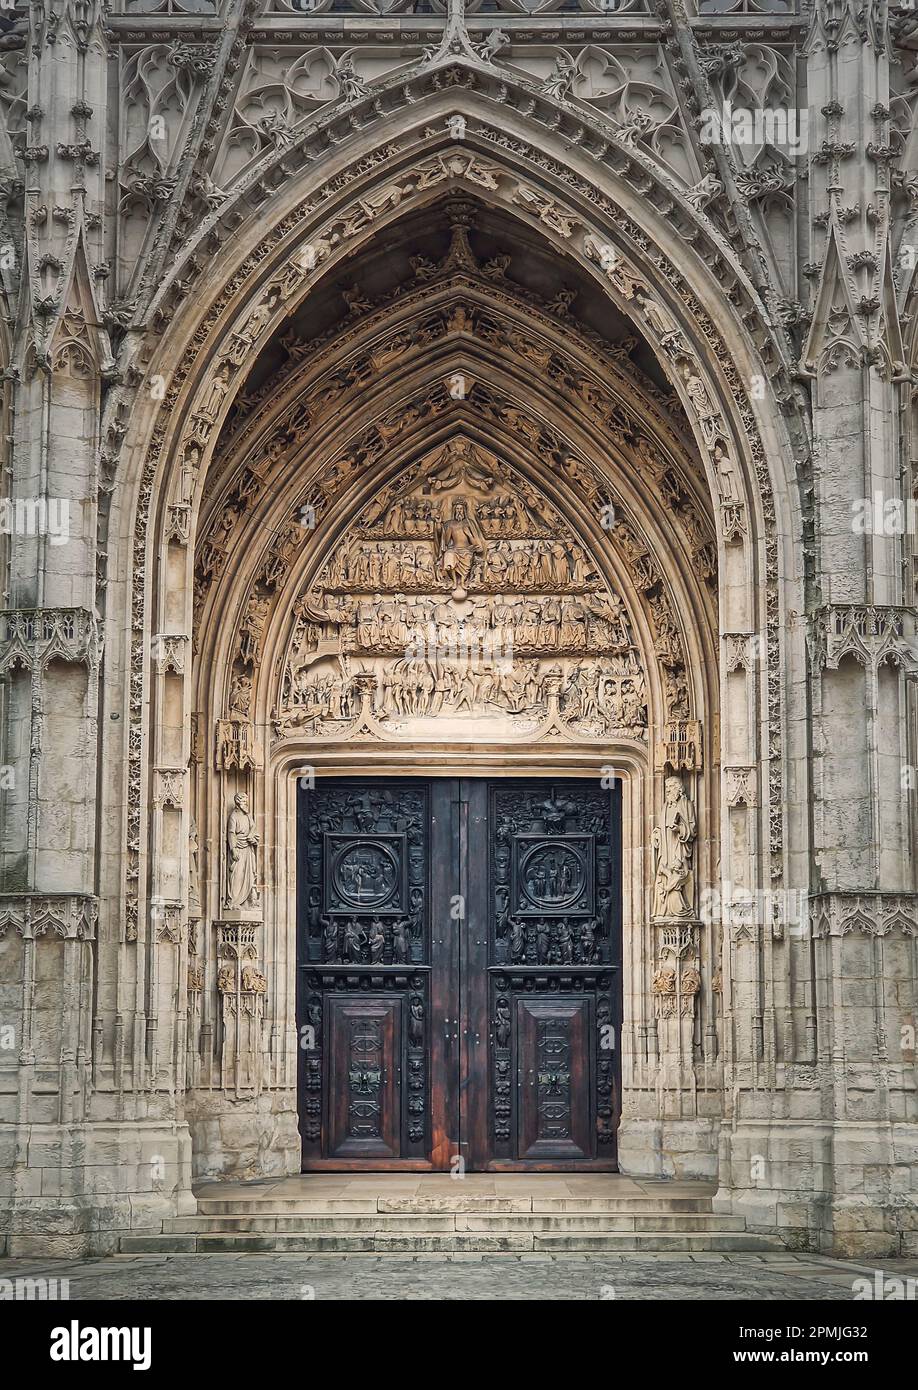 Eingangstür zur Kirche St. Maclou, Rouen in der Normandie, Frankreich. Extravaganter gotischer Architekturstil Stockfoto